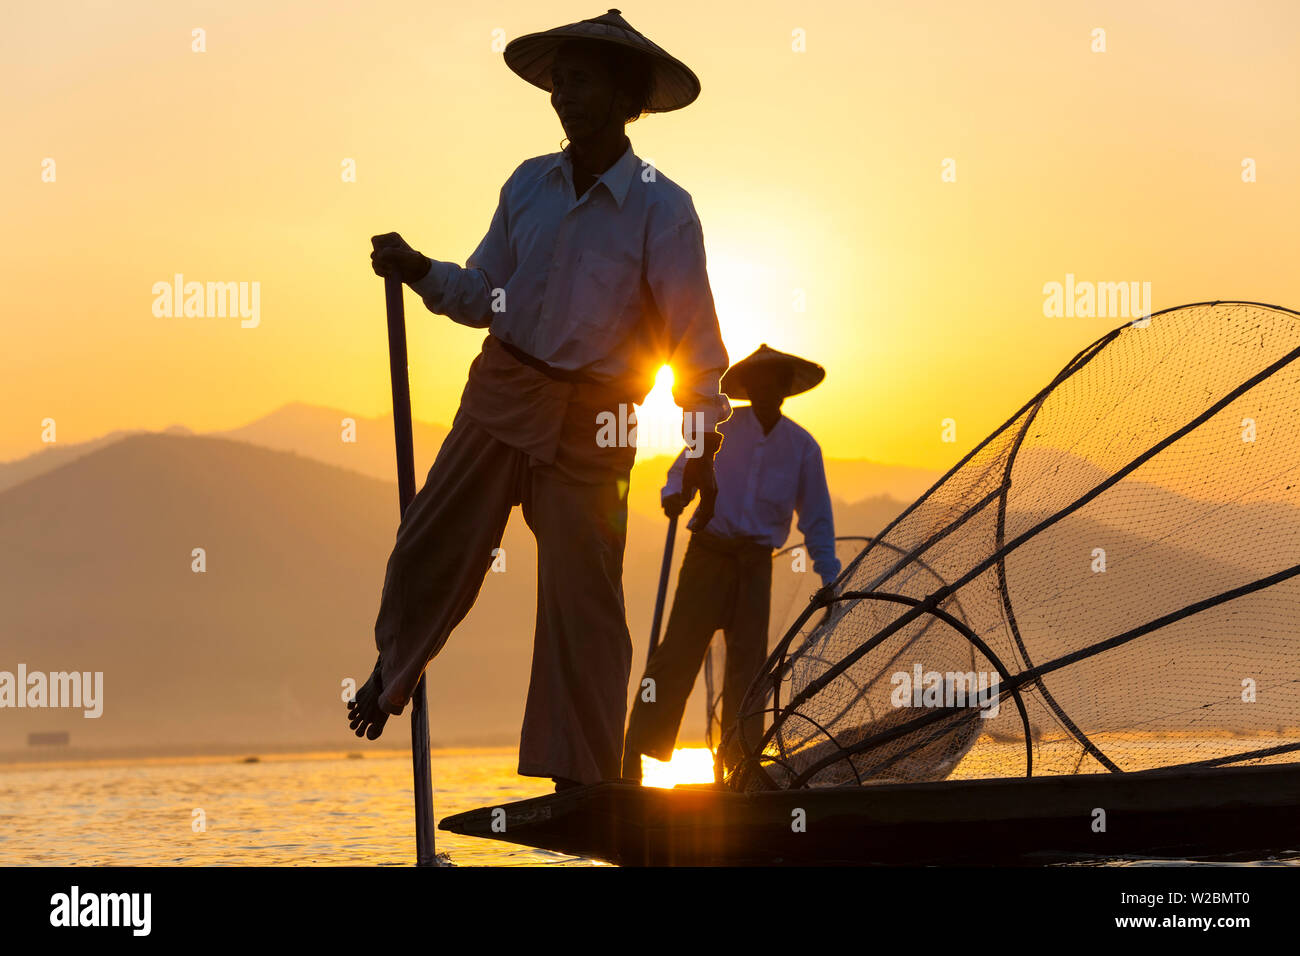 Intha Fisherman, Shan state - Inle Lake, Myanmar (Burma) Stock Photo